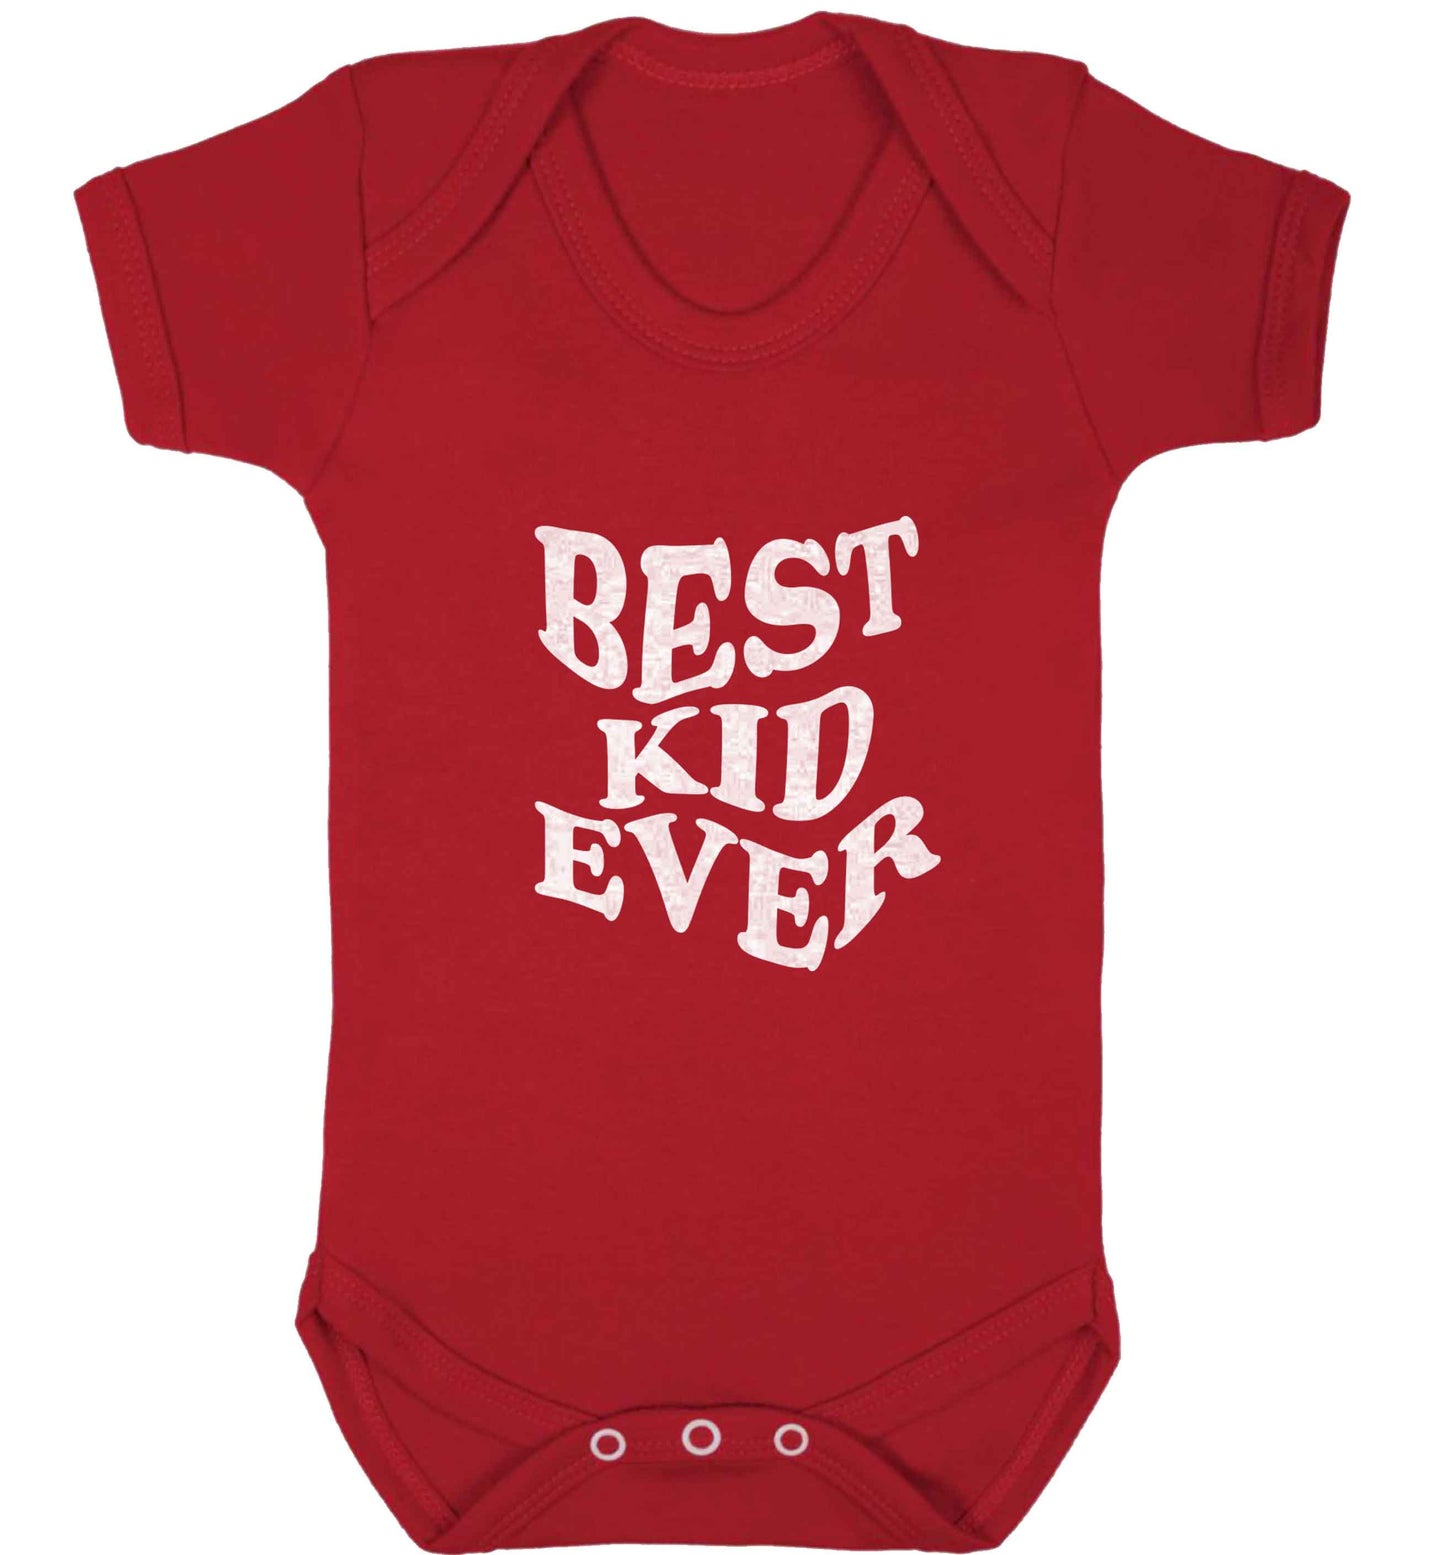 Best kid ever baby vest red 18-24 months